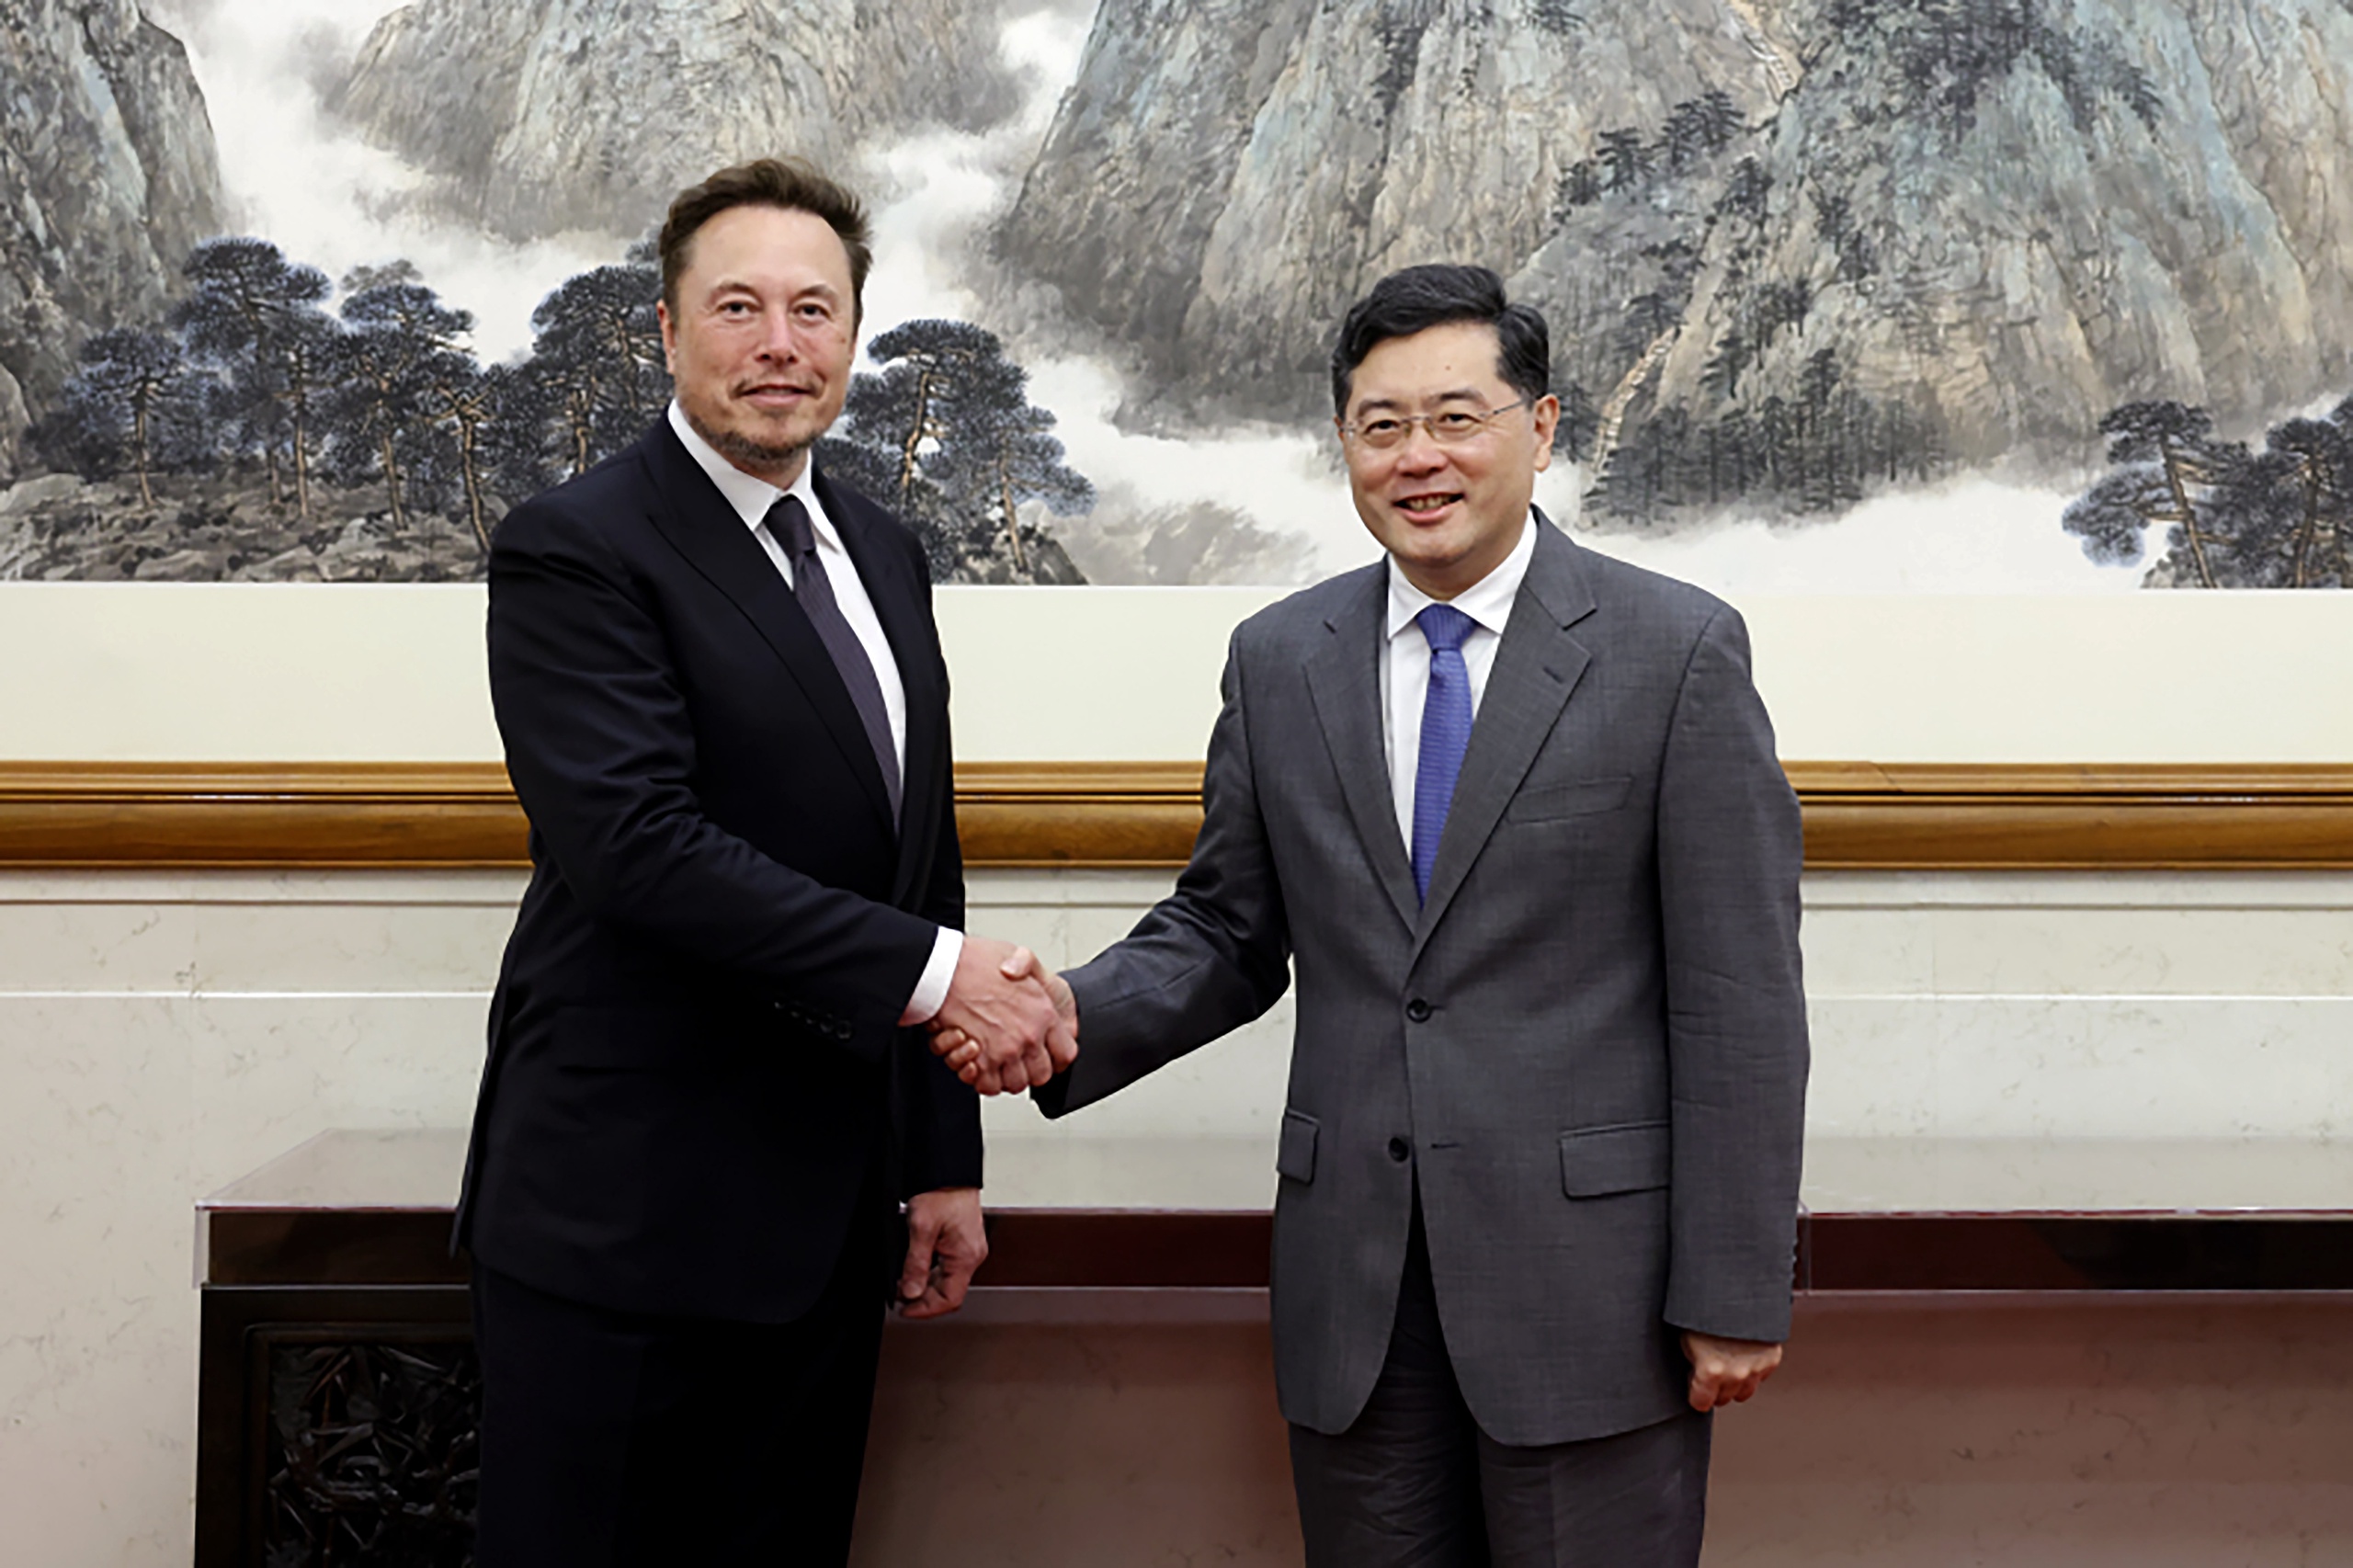 Tesla-topman Elon Musk is overladen met lof tijdens een bezoek aan China. Op Chinese sociale media wordt hij gezien als 'pionier', een 'broeder' en sommigen zien hem zelfs als toekomstig president van de Verenigde Staten. 